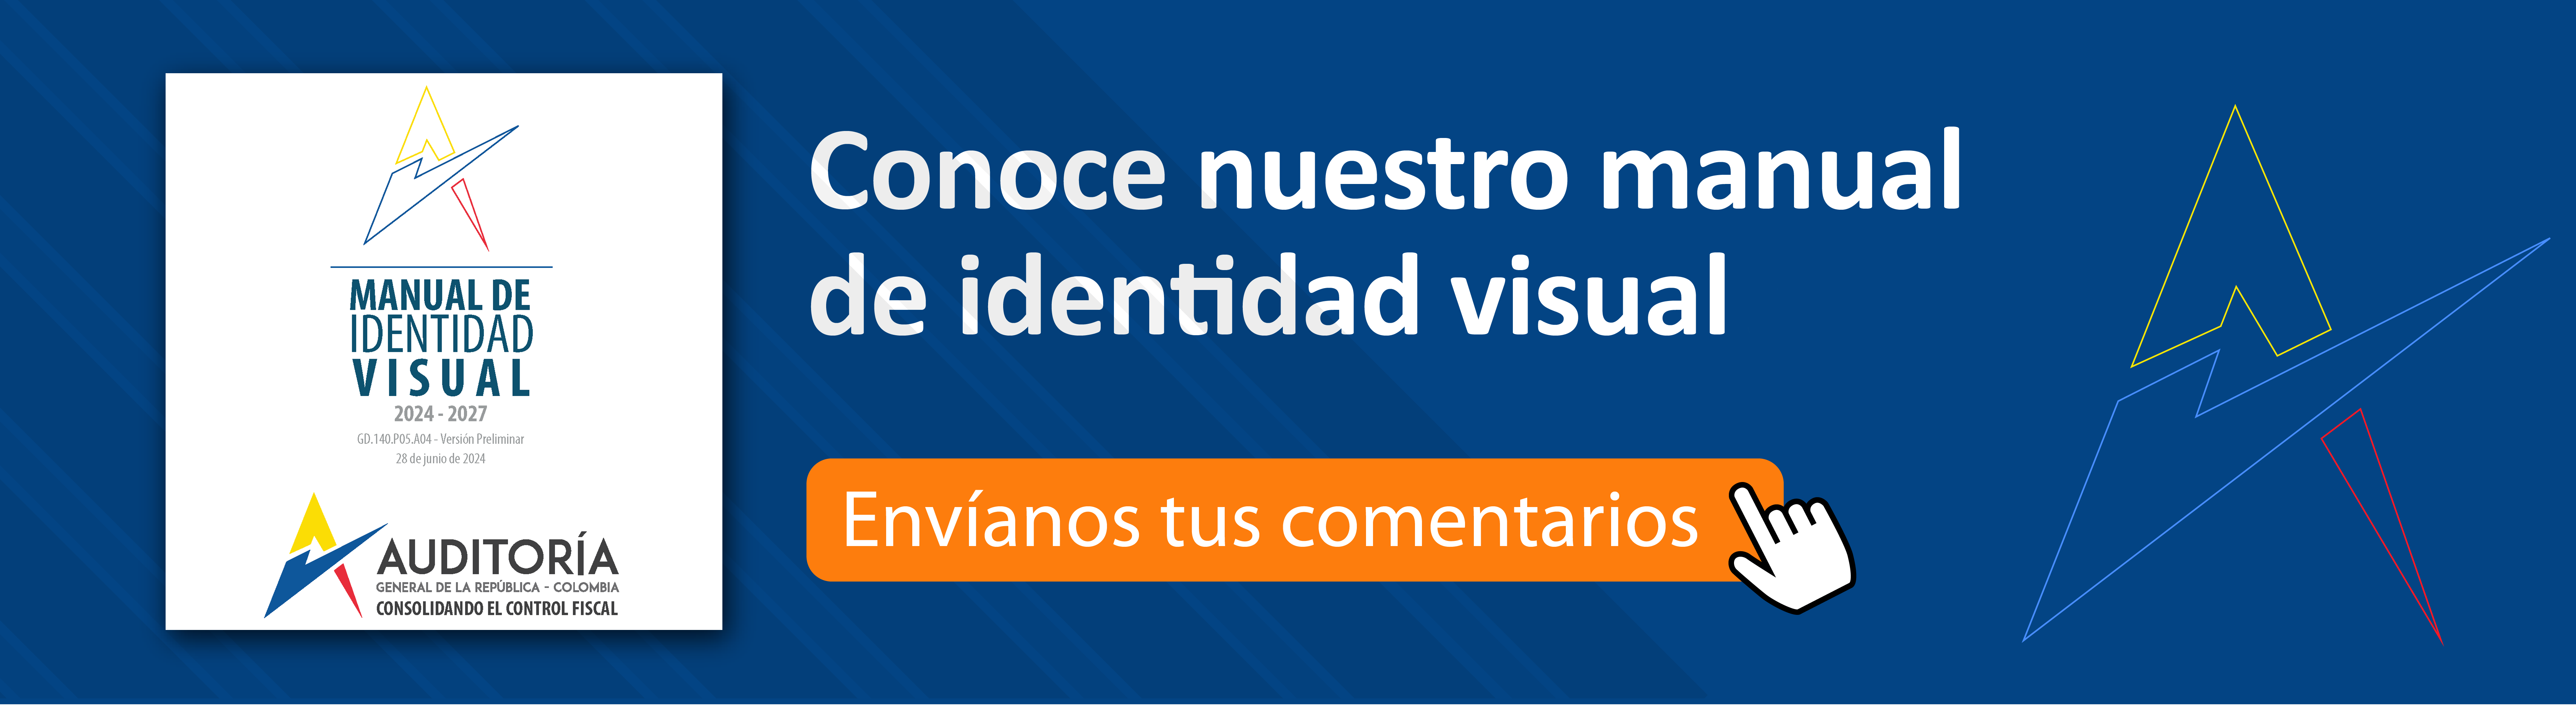 Convocatoria a participar en el desarrollo del Manual de Identidad Visual